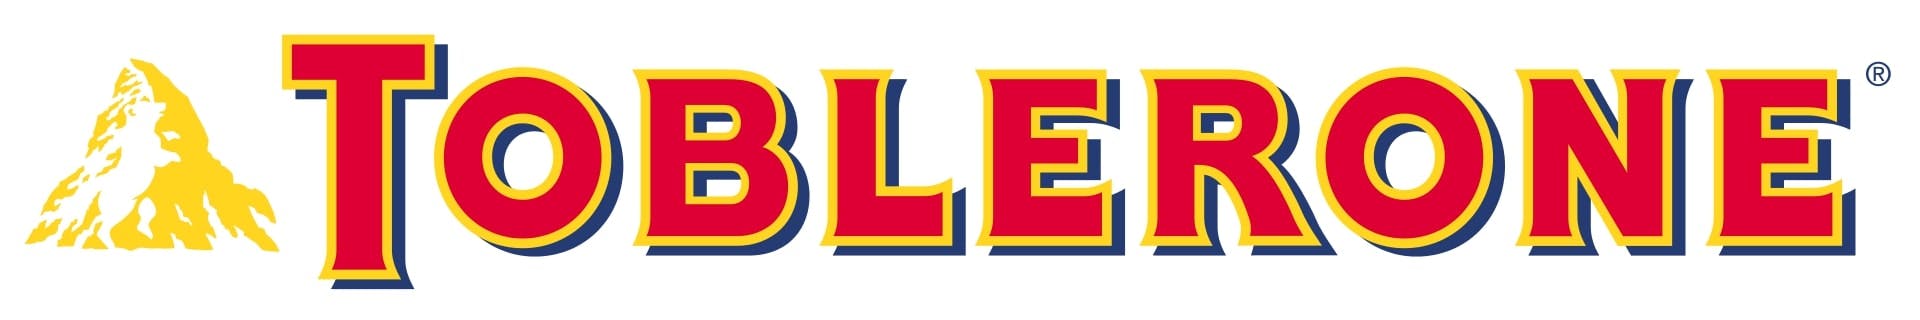  diseño de logos corporativos - toblerone